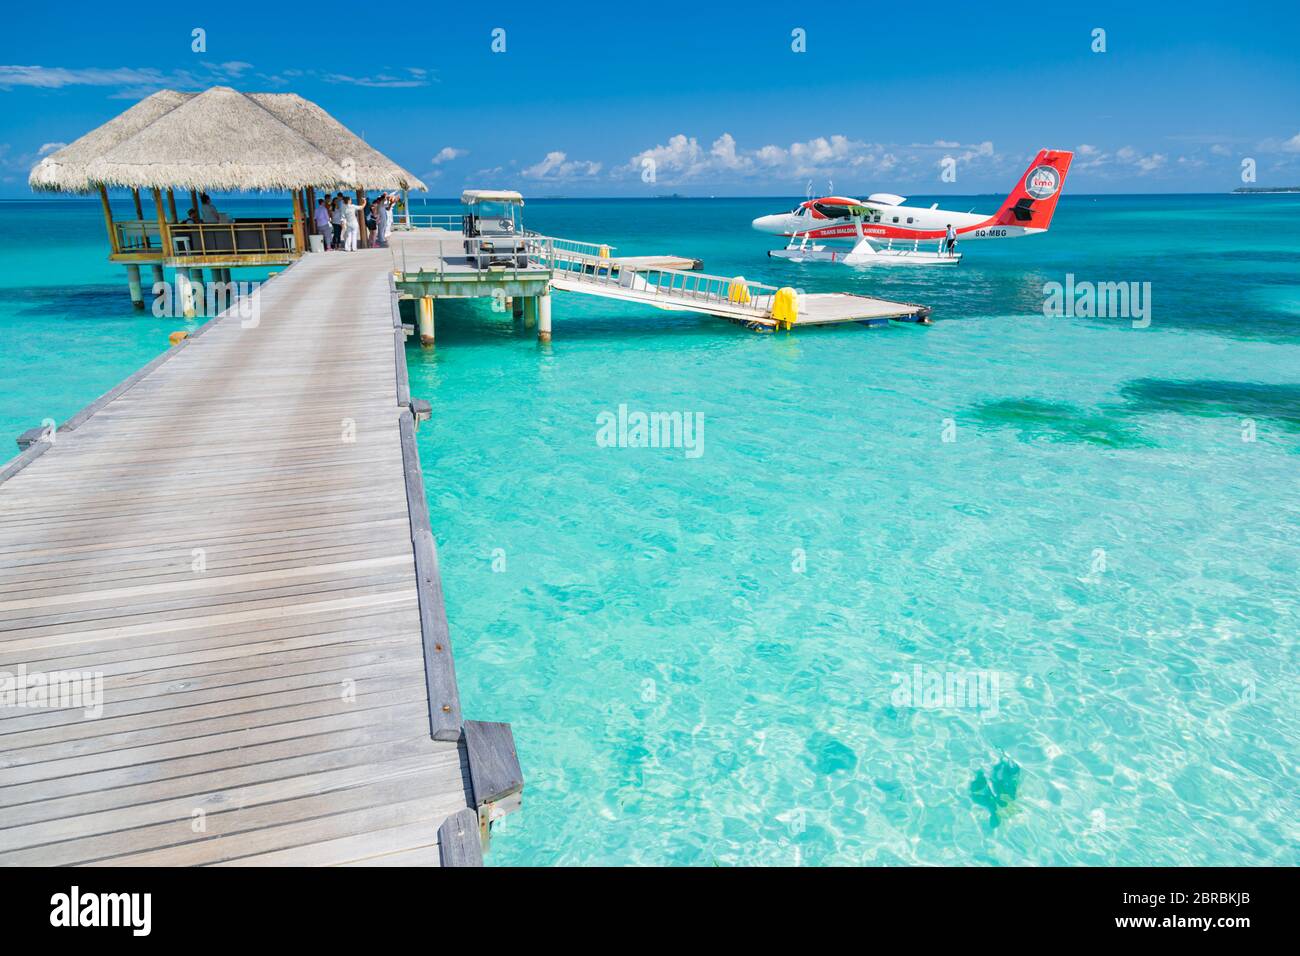 05.19.2019 - Ari Atoll, Malediven: Exotische Szene mit Trans Maldivian Airways Wasserflugzeug auf den Malediven. Urlaub oder Urlaub auf den Malediven Konzept Stockfoto